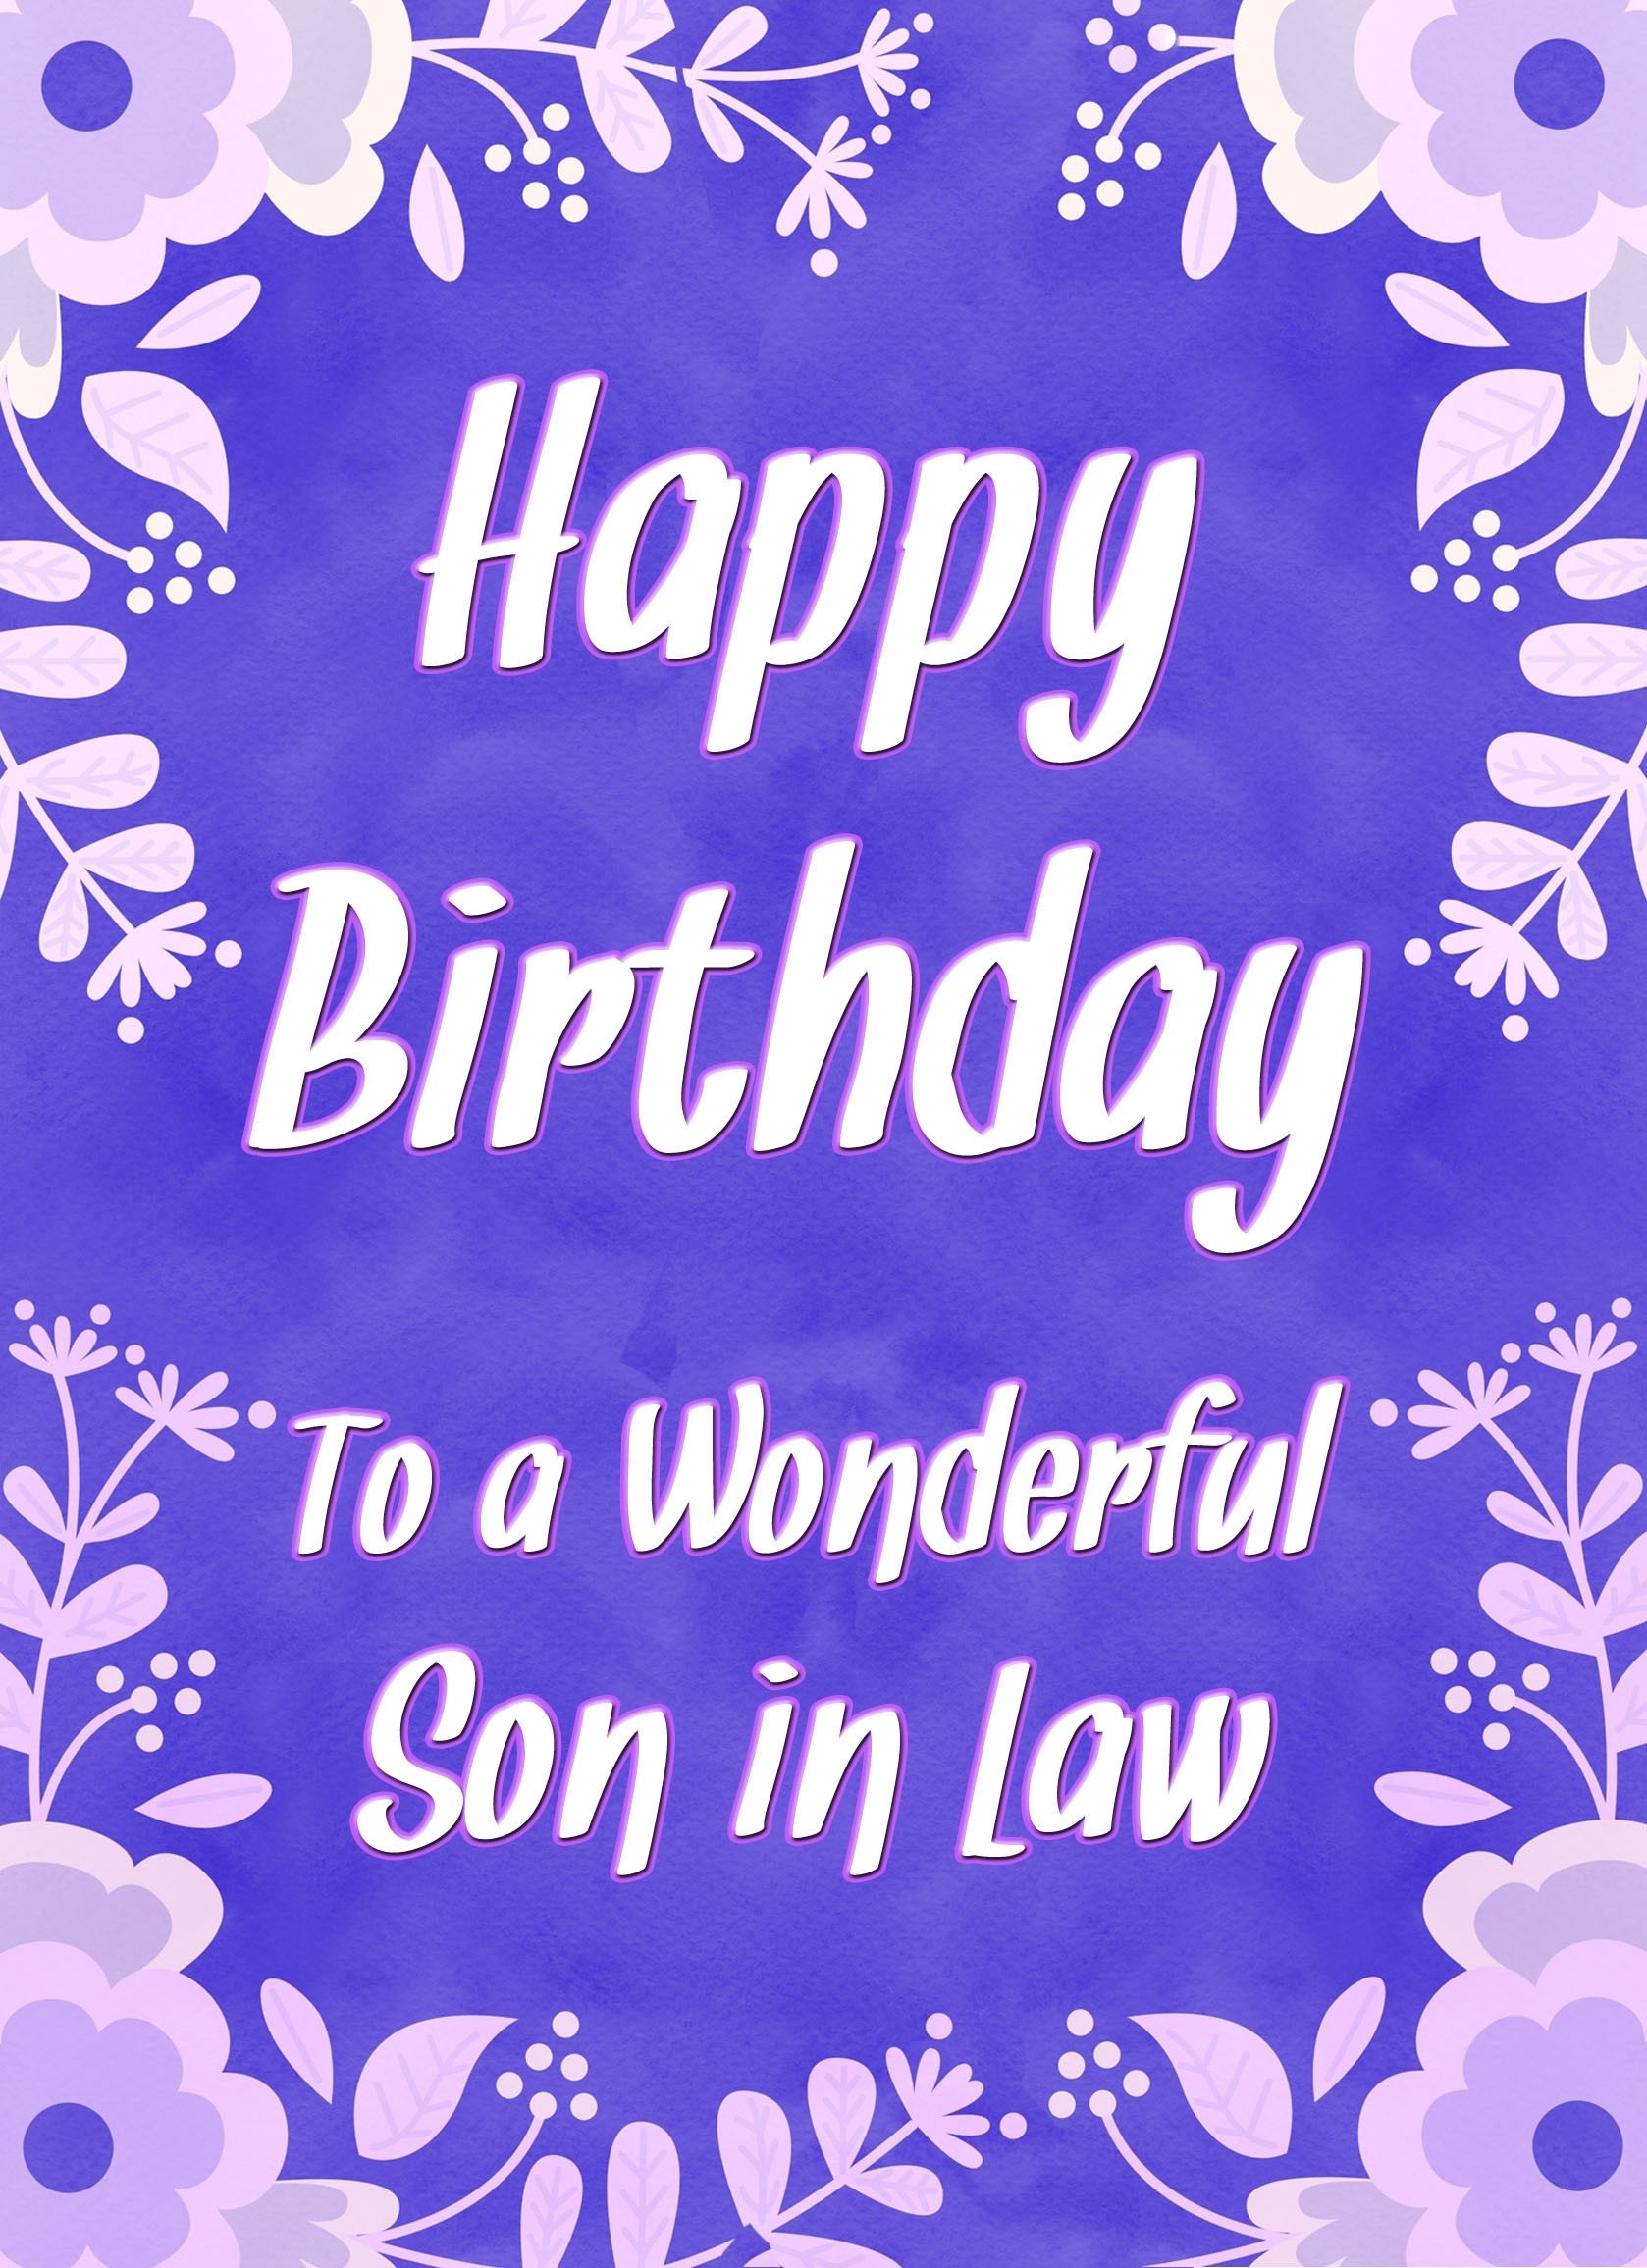 Birthday Card For Wonderful Son in Law (Purple Border)